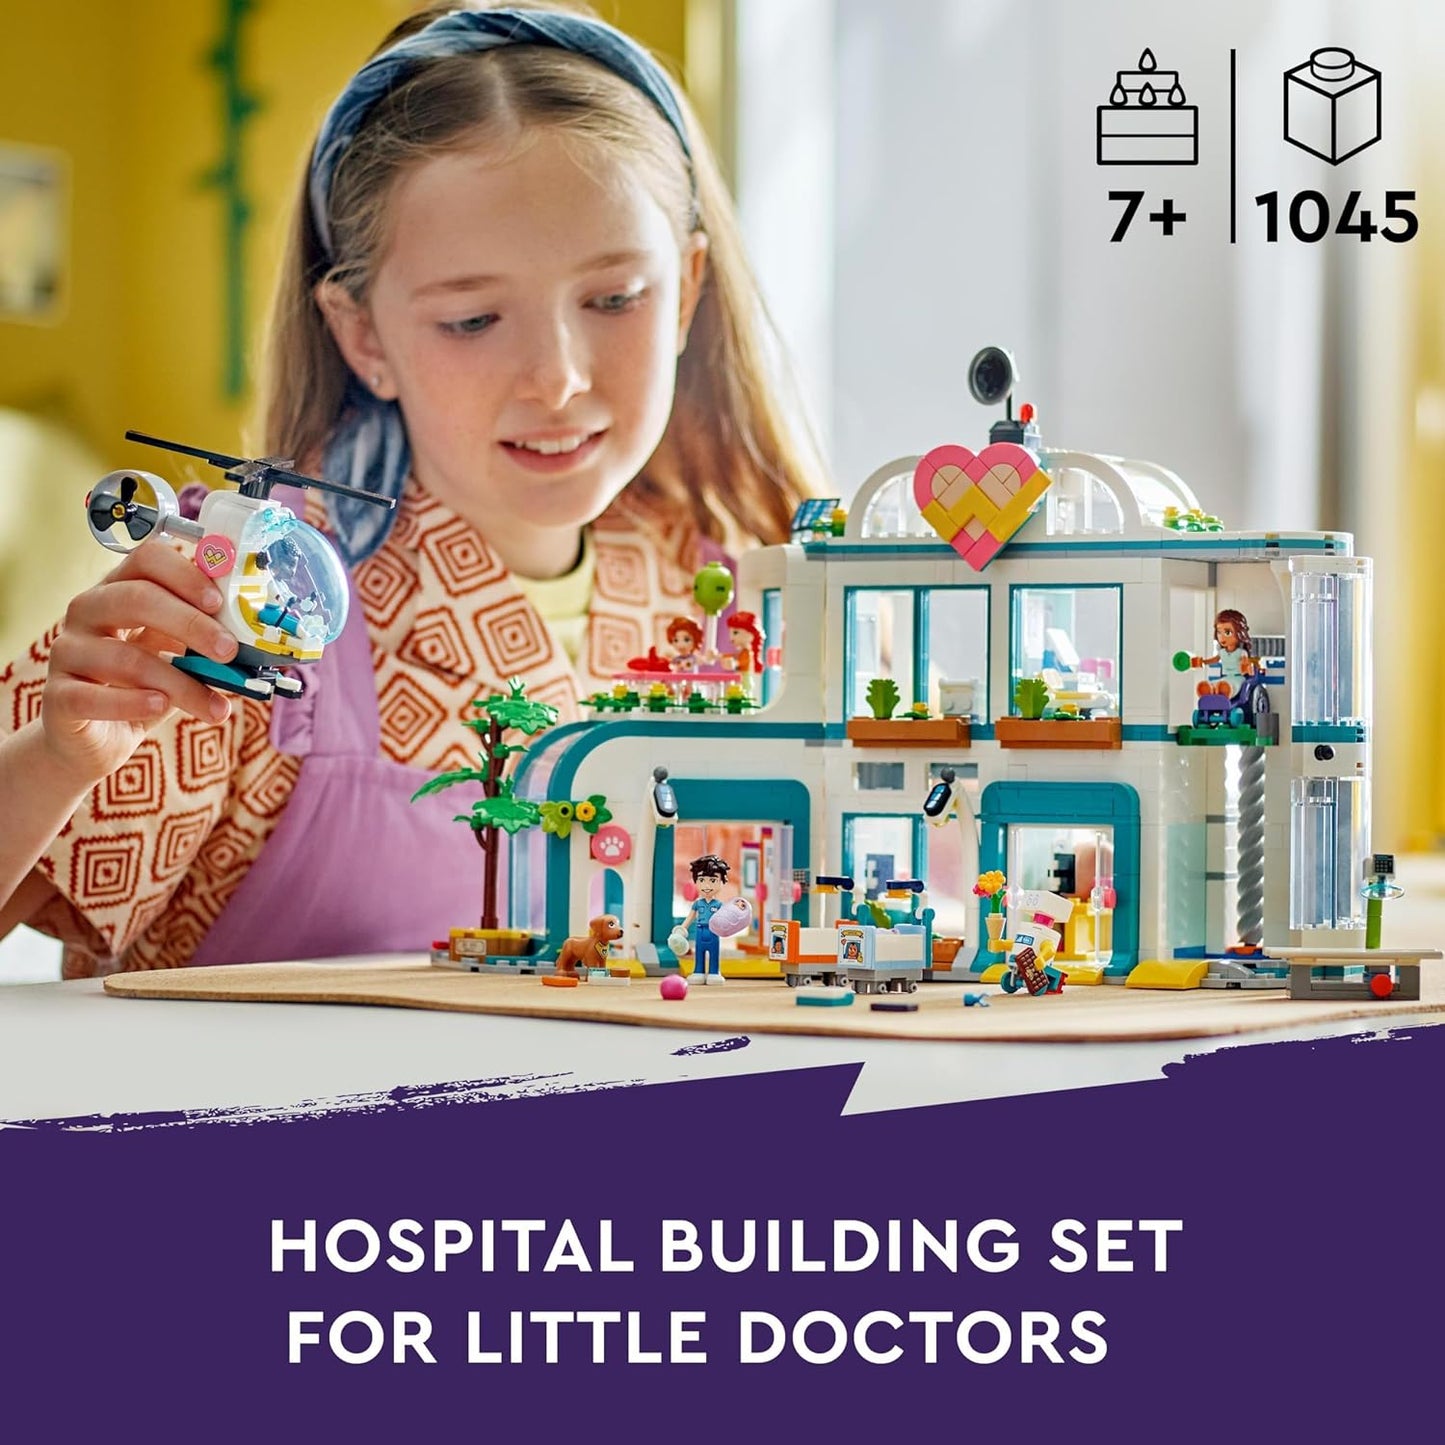 LEGO Conjunto de hospital Friends Heartlake City com brinquedo de helicóptero para meninas, meninos e crianças de 7 anos ou mais, personagens de miniboneca, incluindo outono, brinquedos de construção de dramatização de médico, ideia de presente 42621